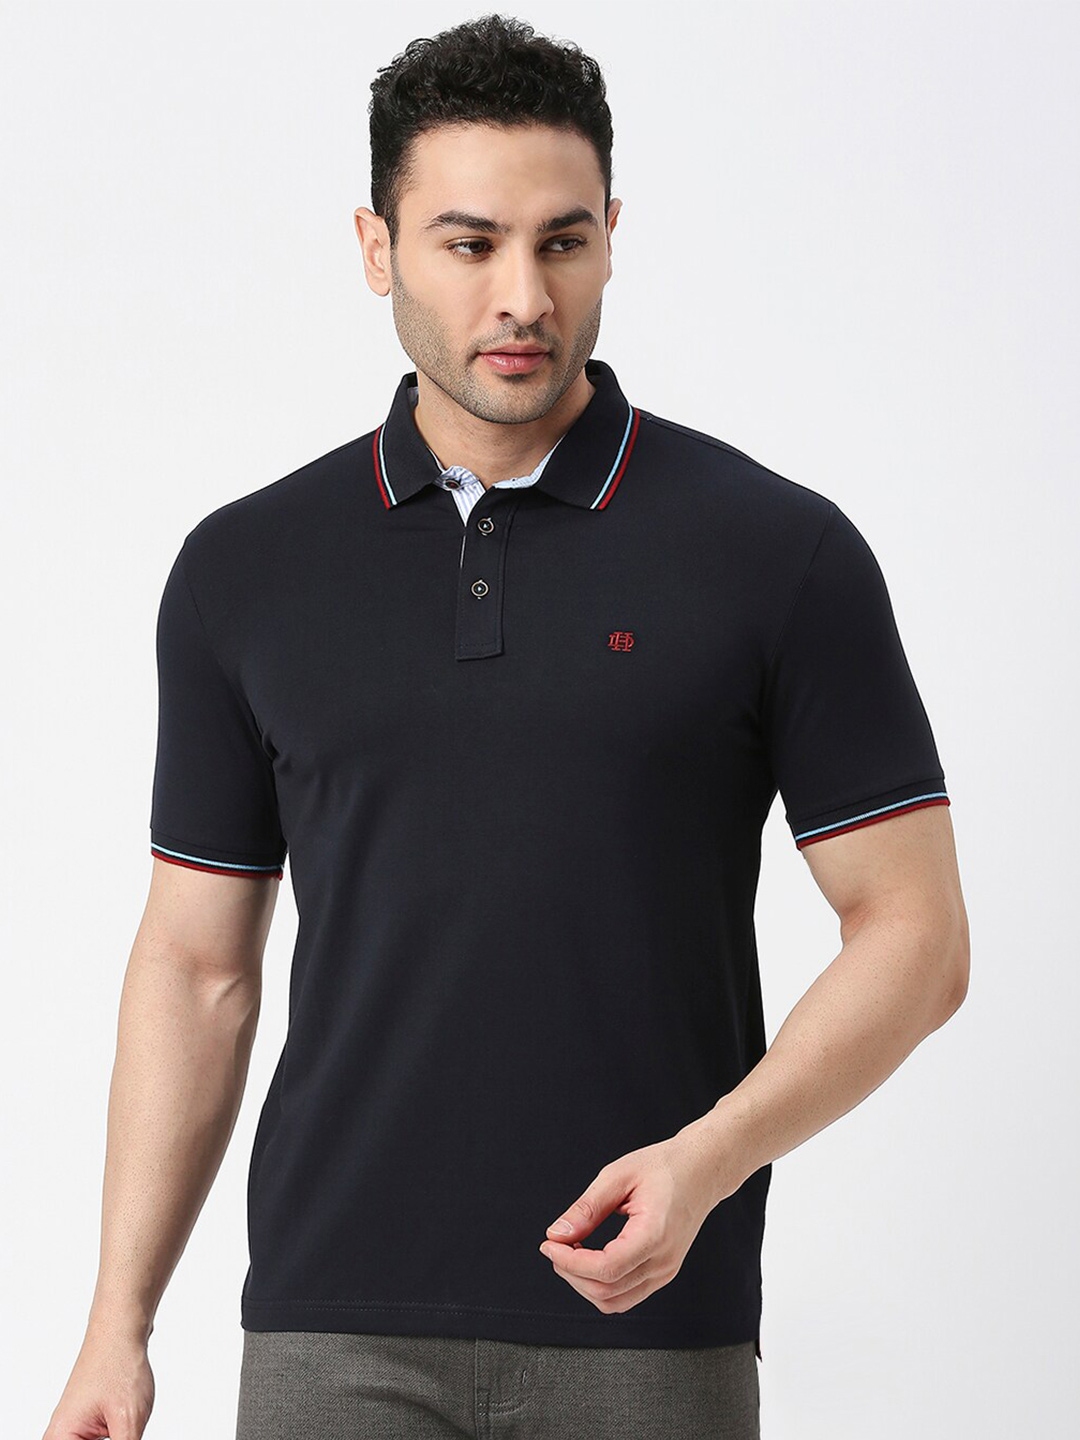 Buy DRAGON HILL Polo Collar Slim Fit T Shirt - Tshirts for Men 22823336 ...